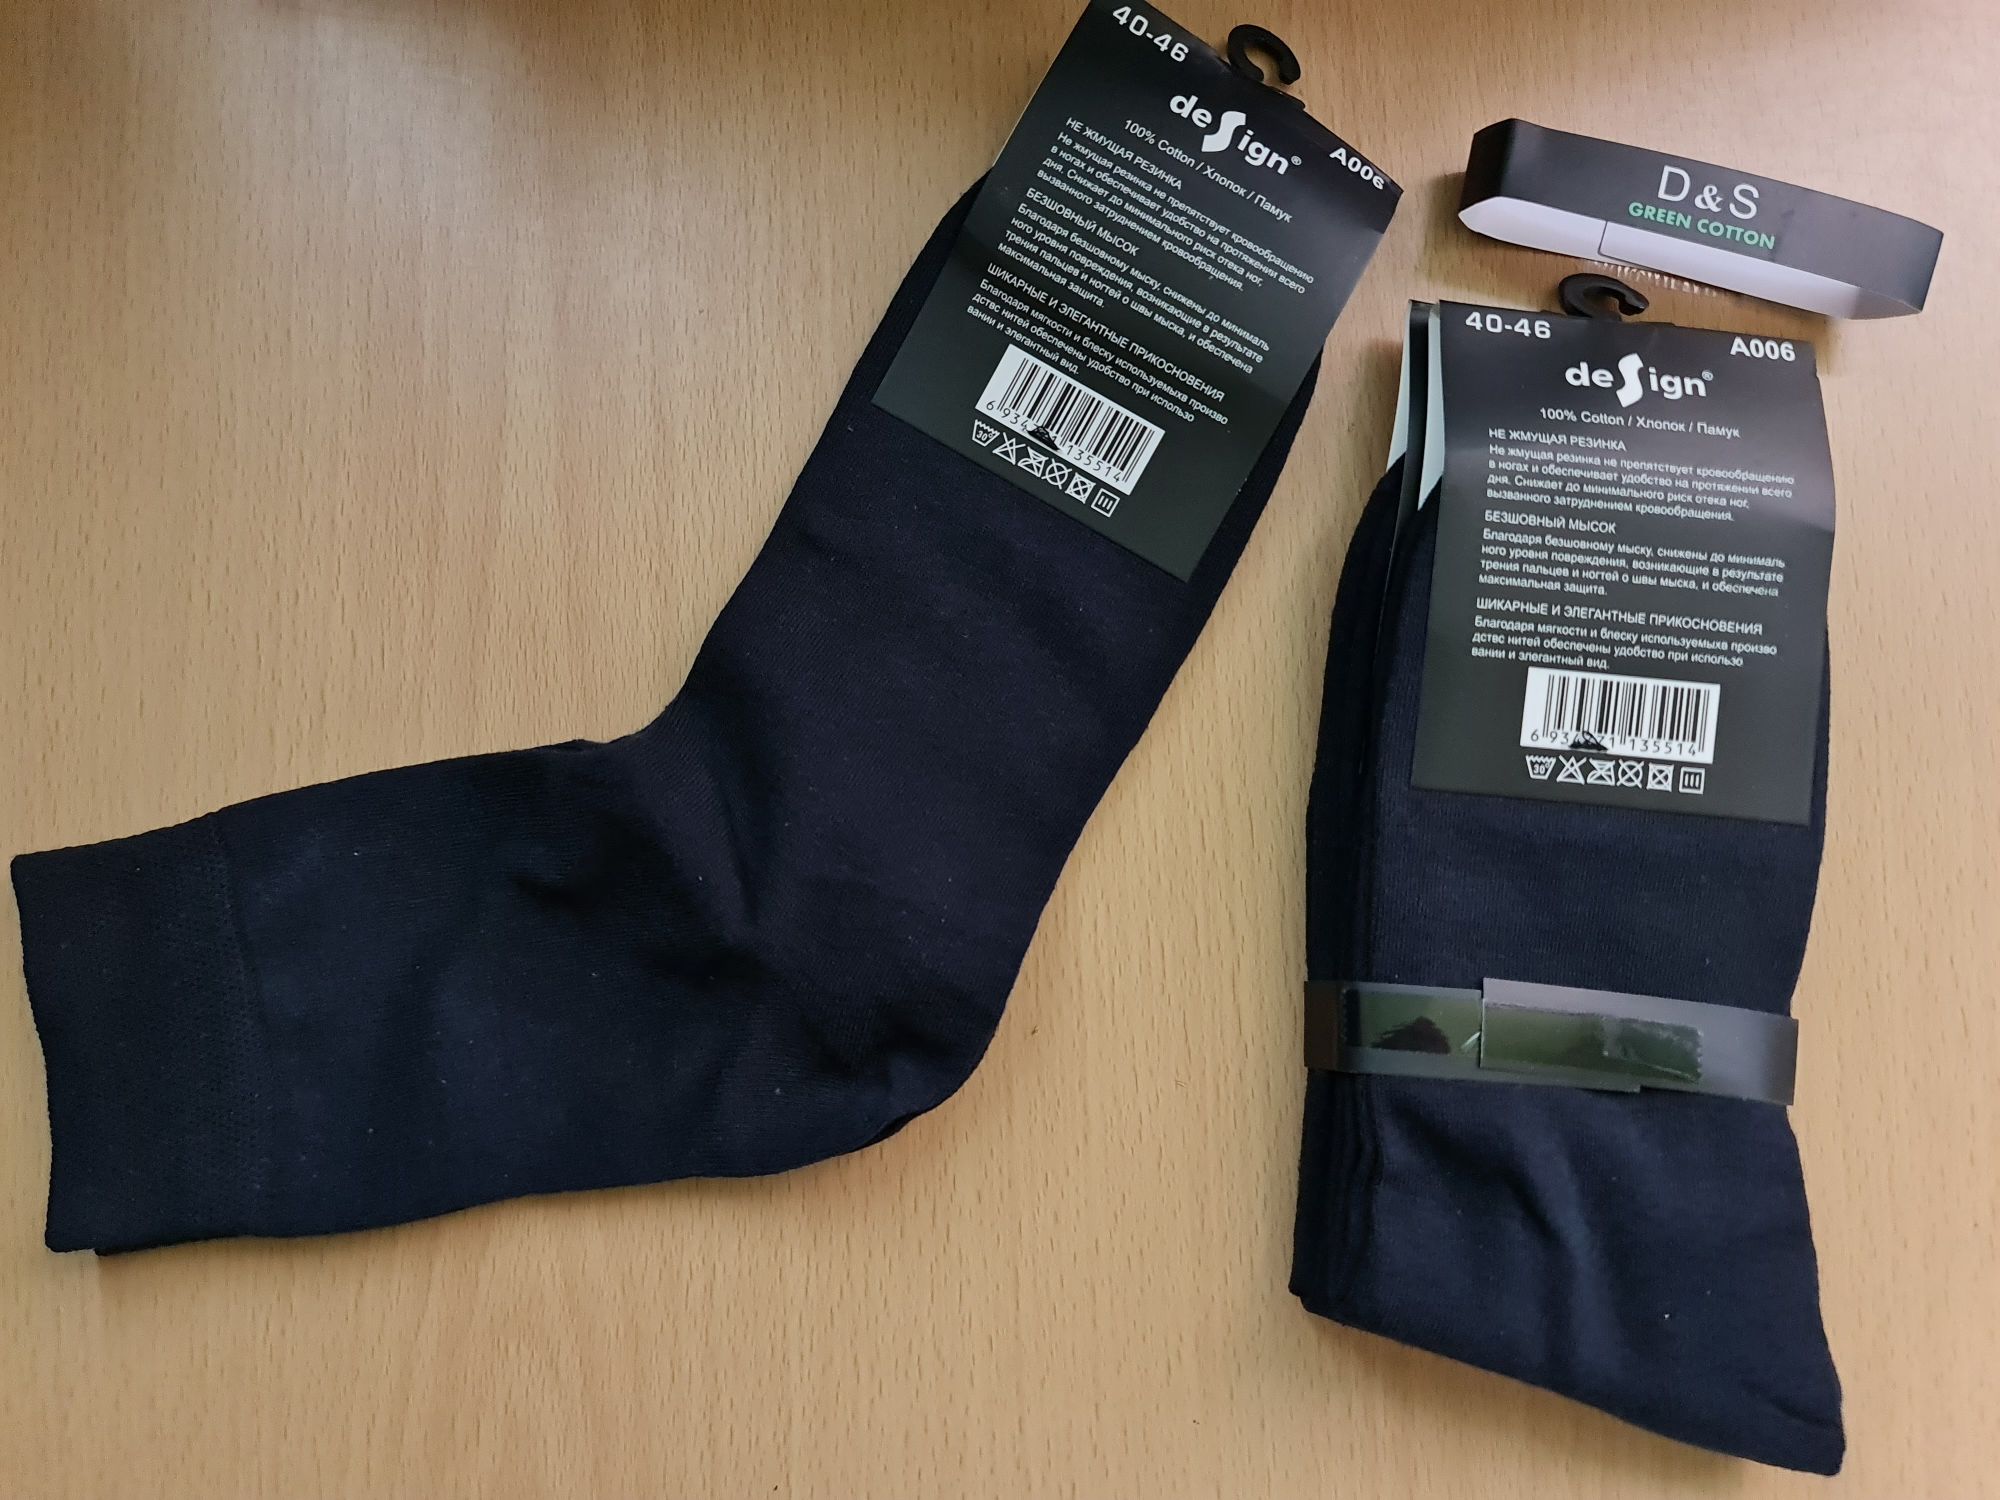 Чорапи 100% памук D&S green cotton